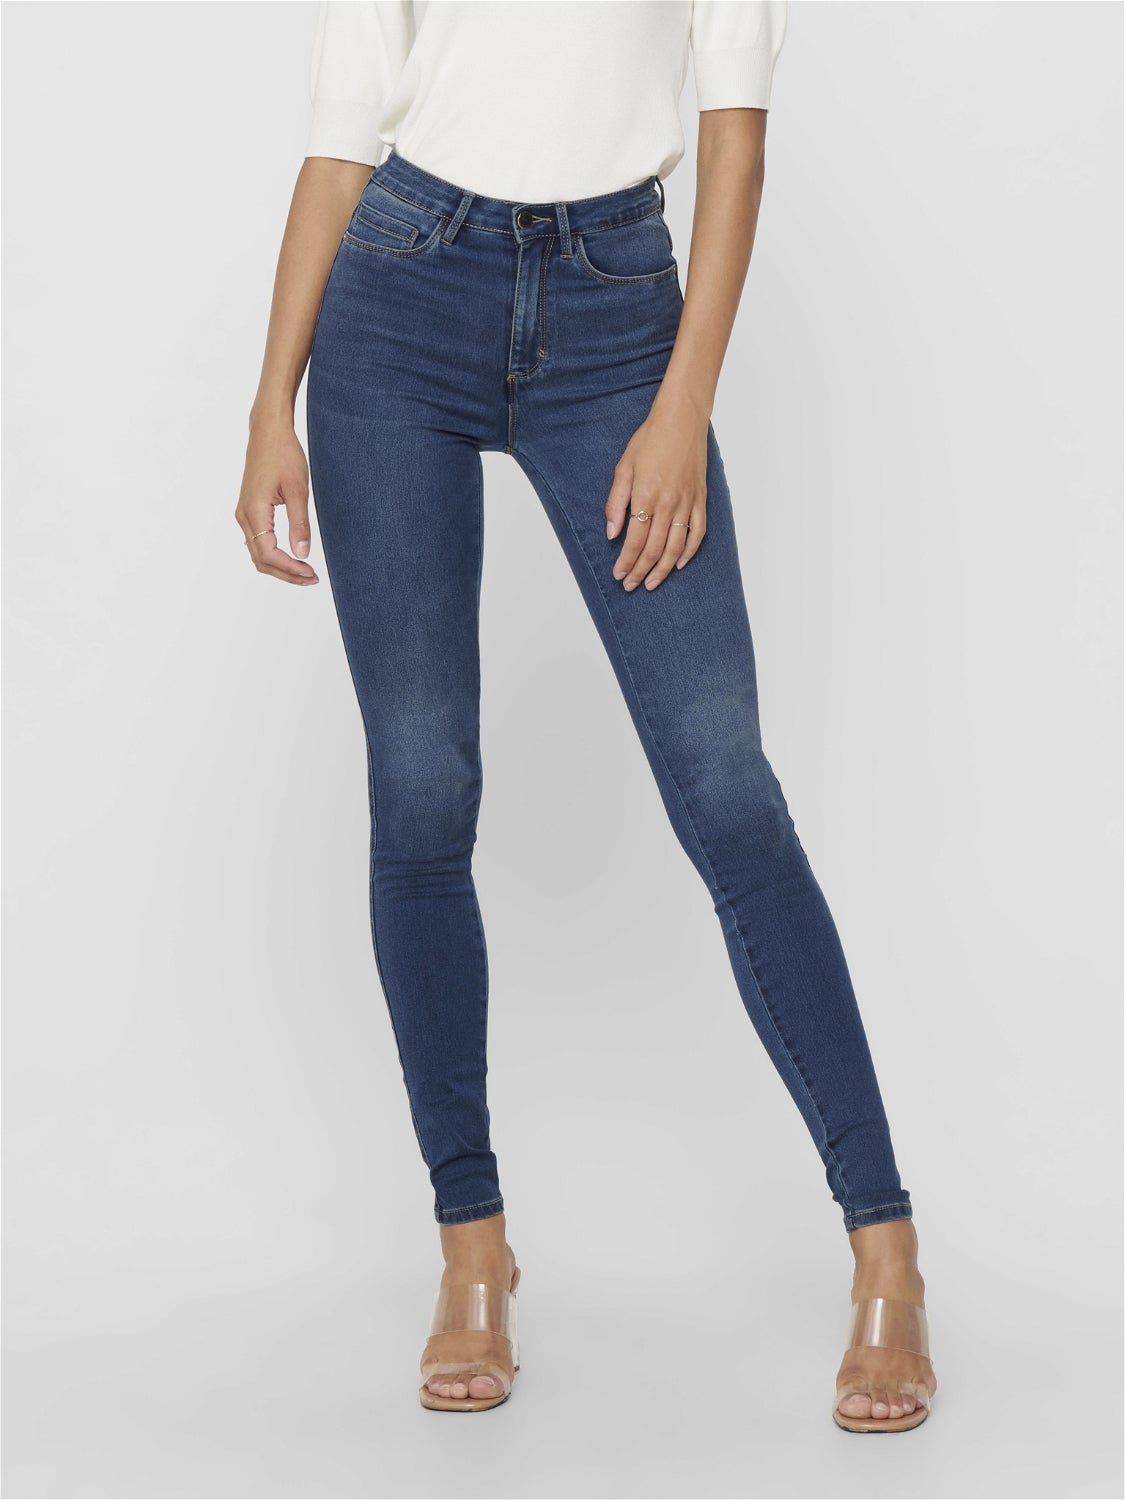 Only Damen Jeans-Hose Regular Ankel Skinny Stretch Röhre Röhrenjeans knöchellang 